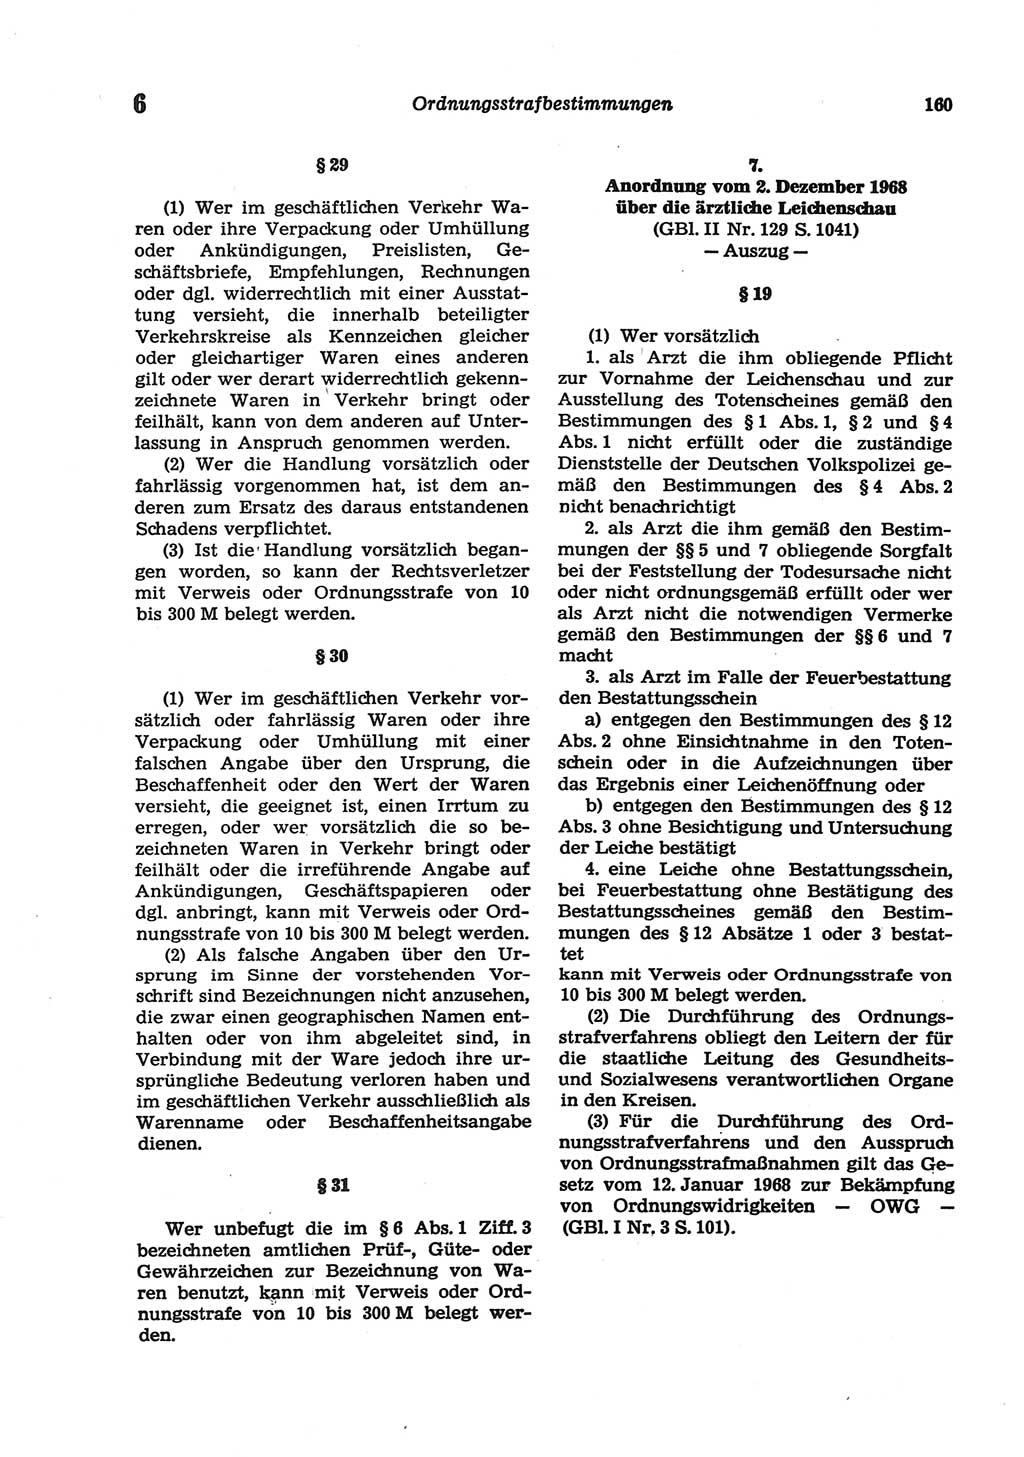 Strafgesetzbuch (StGB) der Deutschen Demokratischen Republik (DDR) und angrenzende Gesetze und Bestimmungen 1977, Seite 160 (StGB DDR Ges. Best. 1977, S. 160)